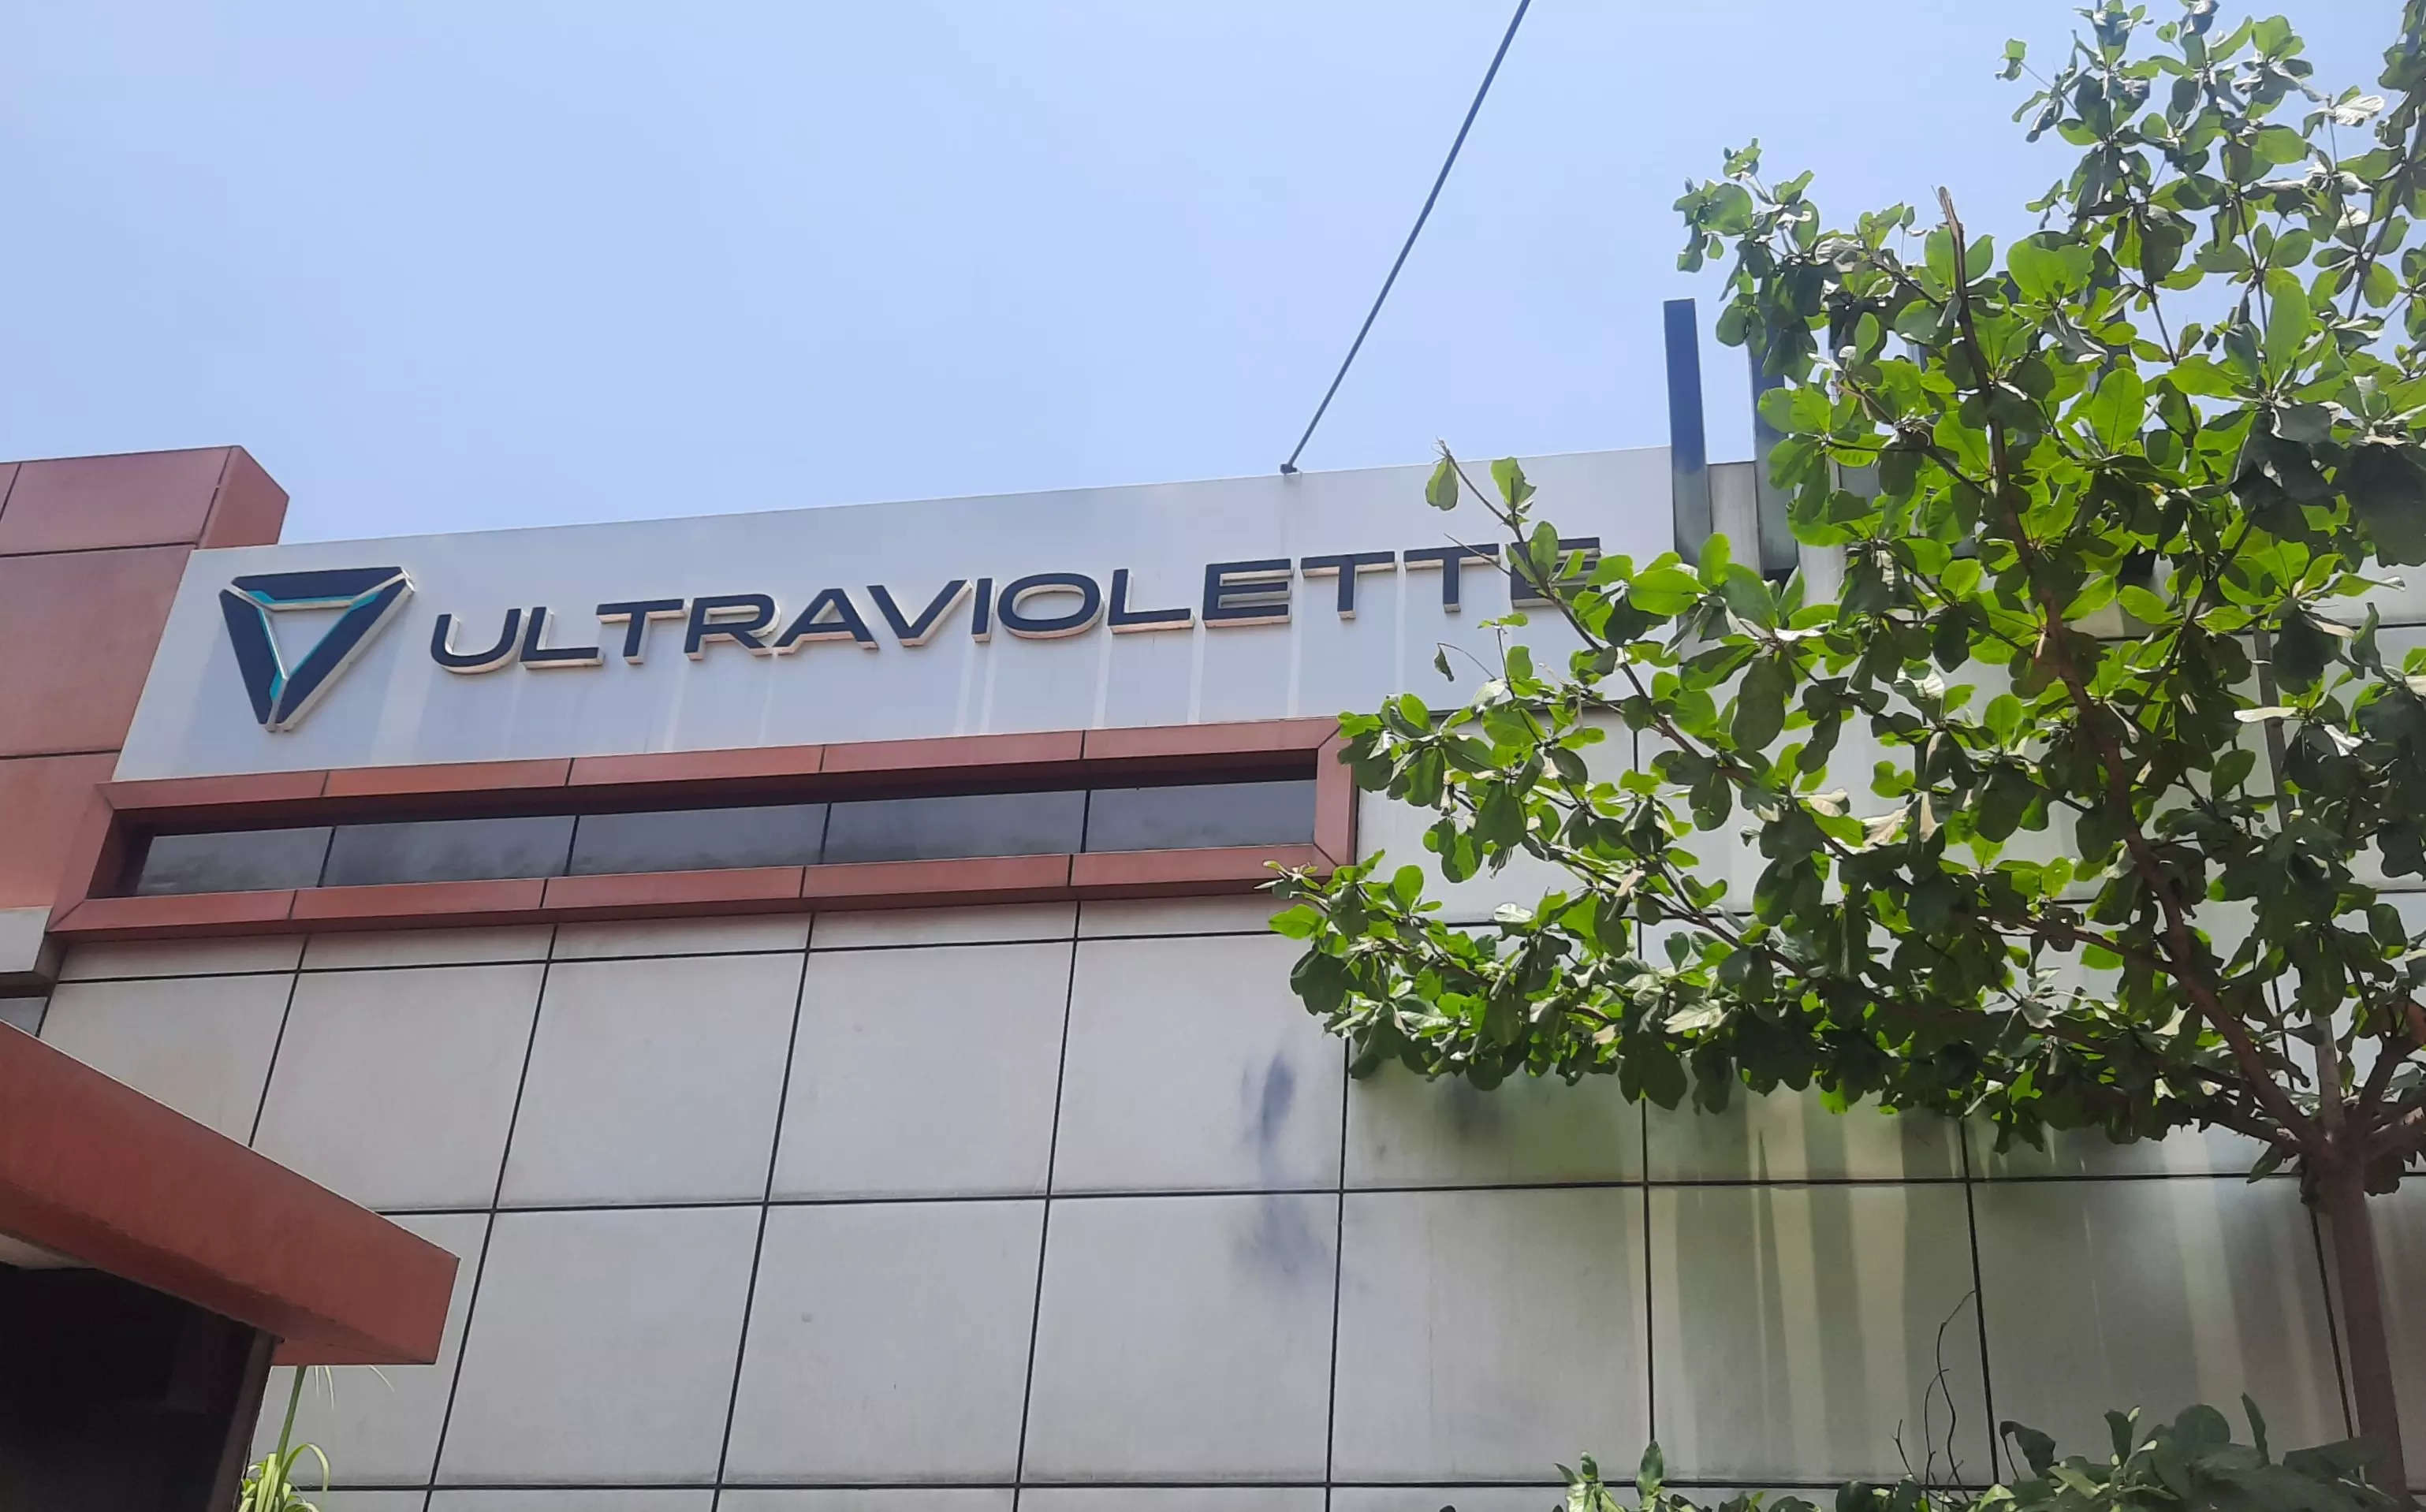 <p>Ultraviolette factory in Jigani Industrial area, Bengaluru</p>